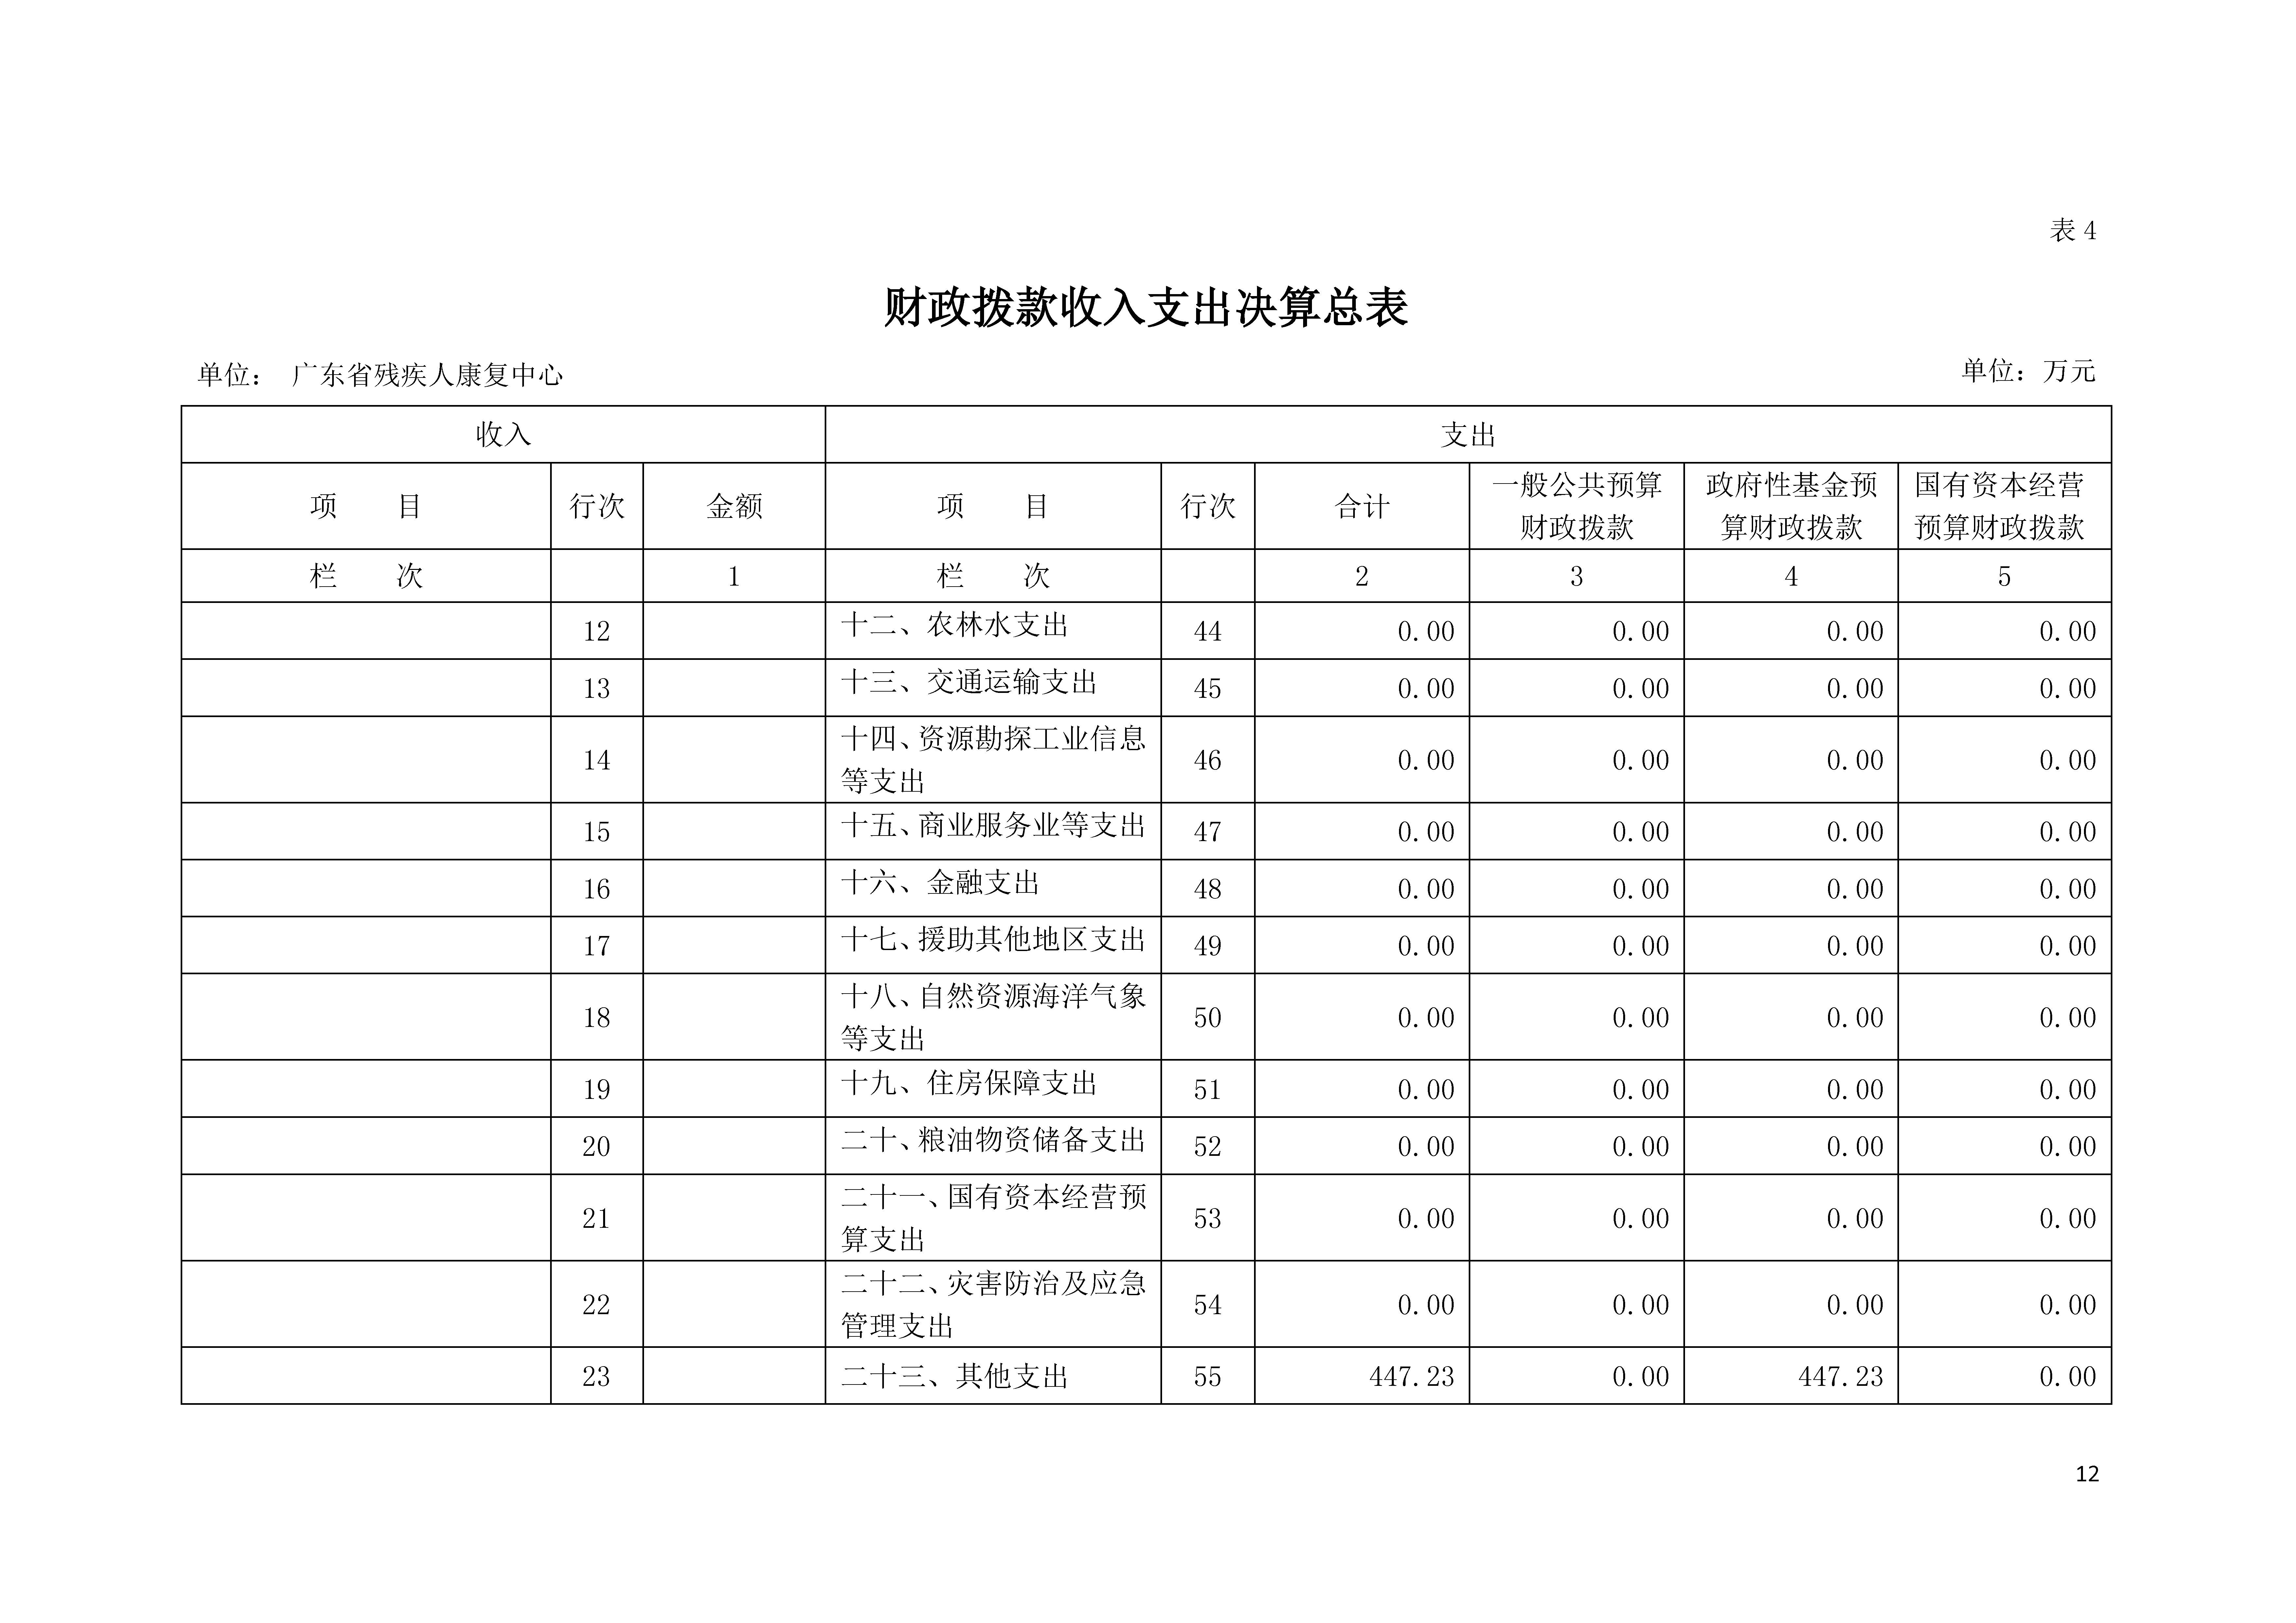 2020年广东省残疾人康复中心部门决算_页面_12.jpg